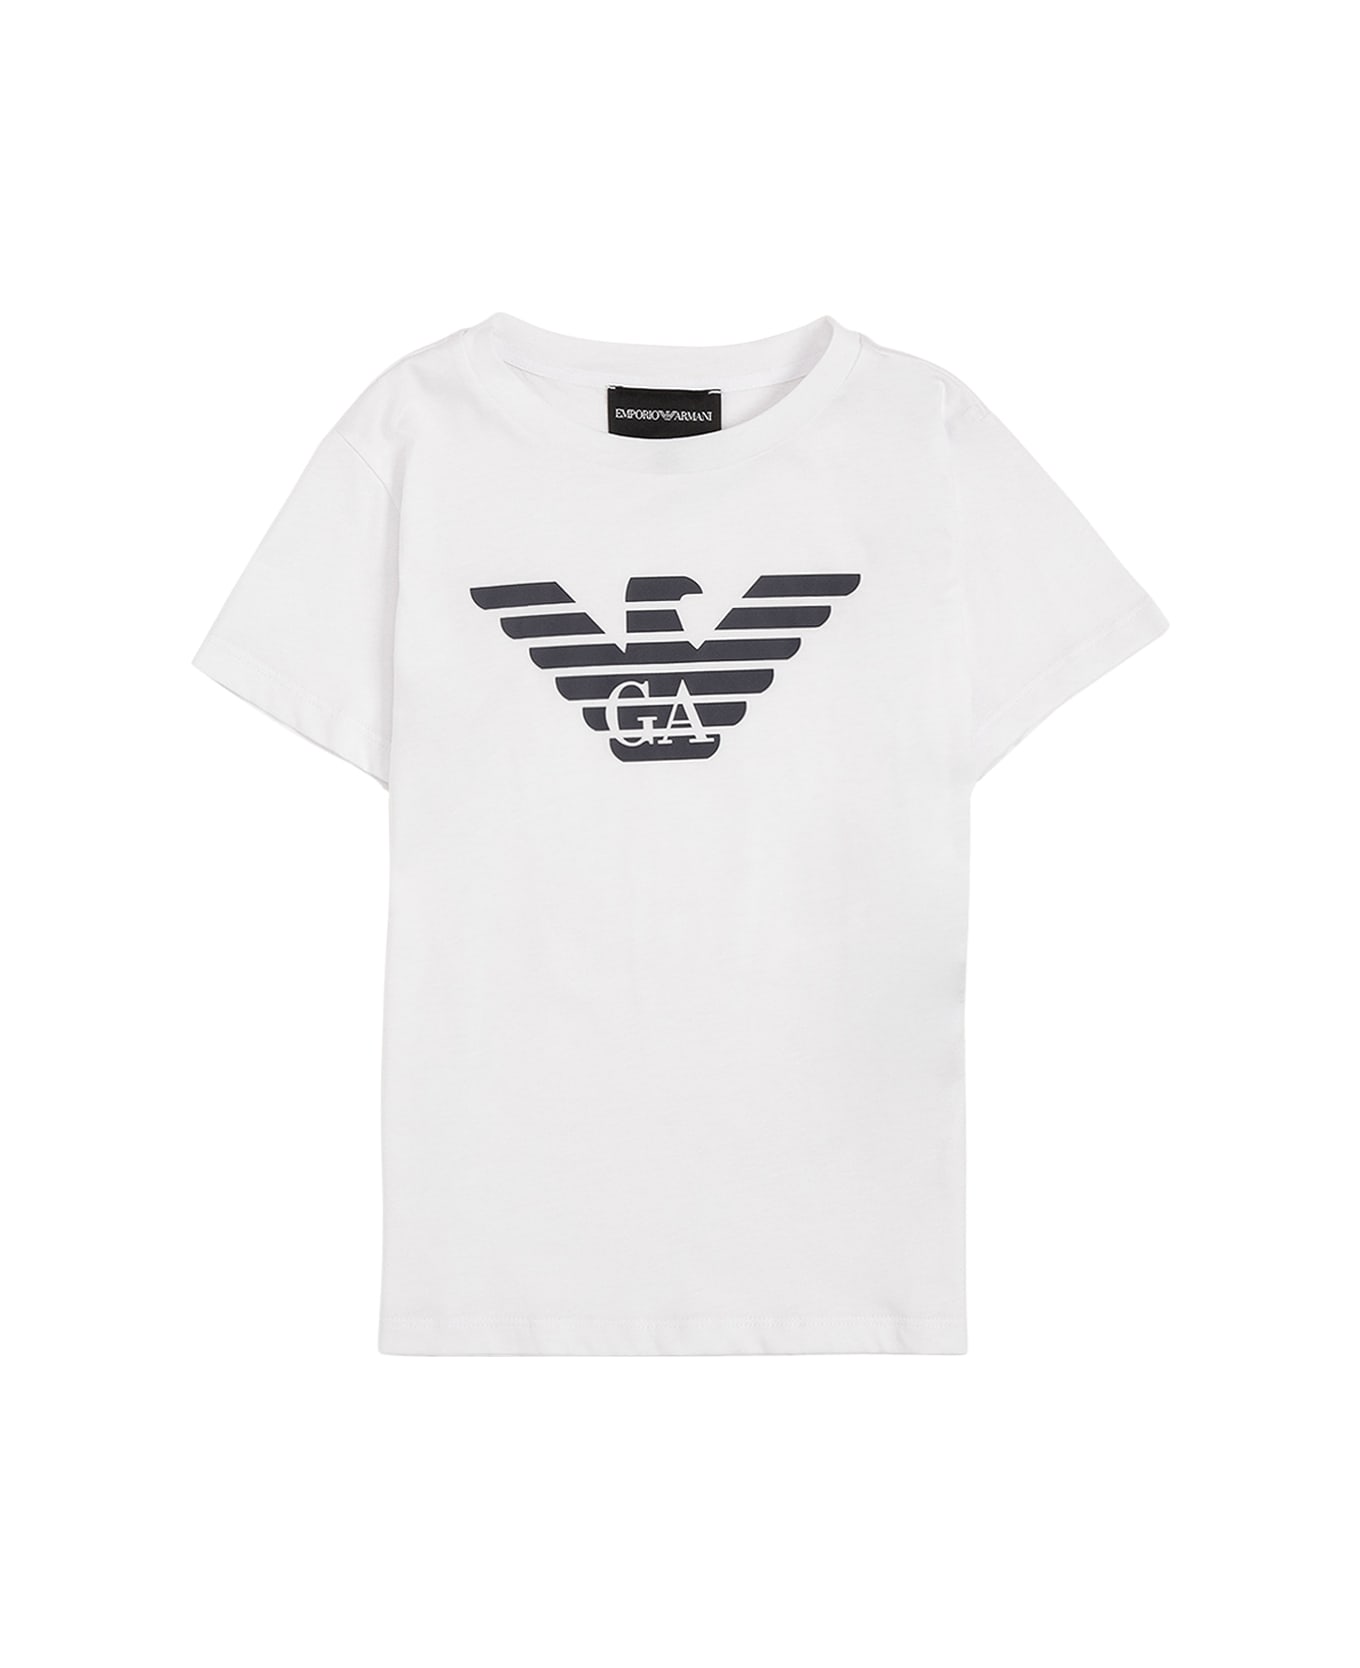 Emporio Armani White Cotton T-shirt With Logo Print - White